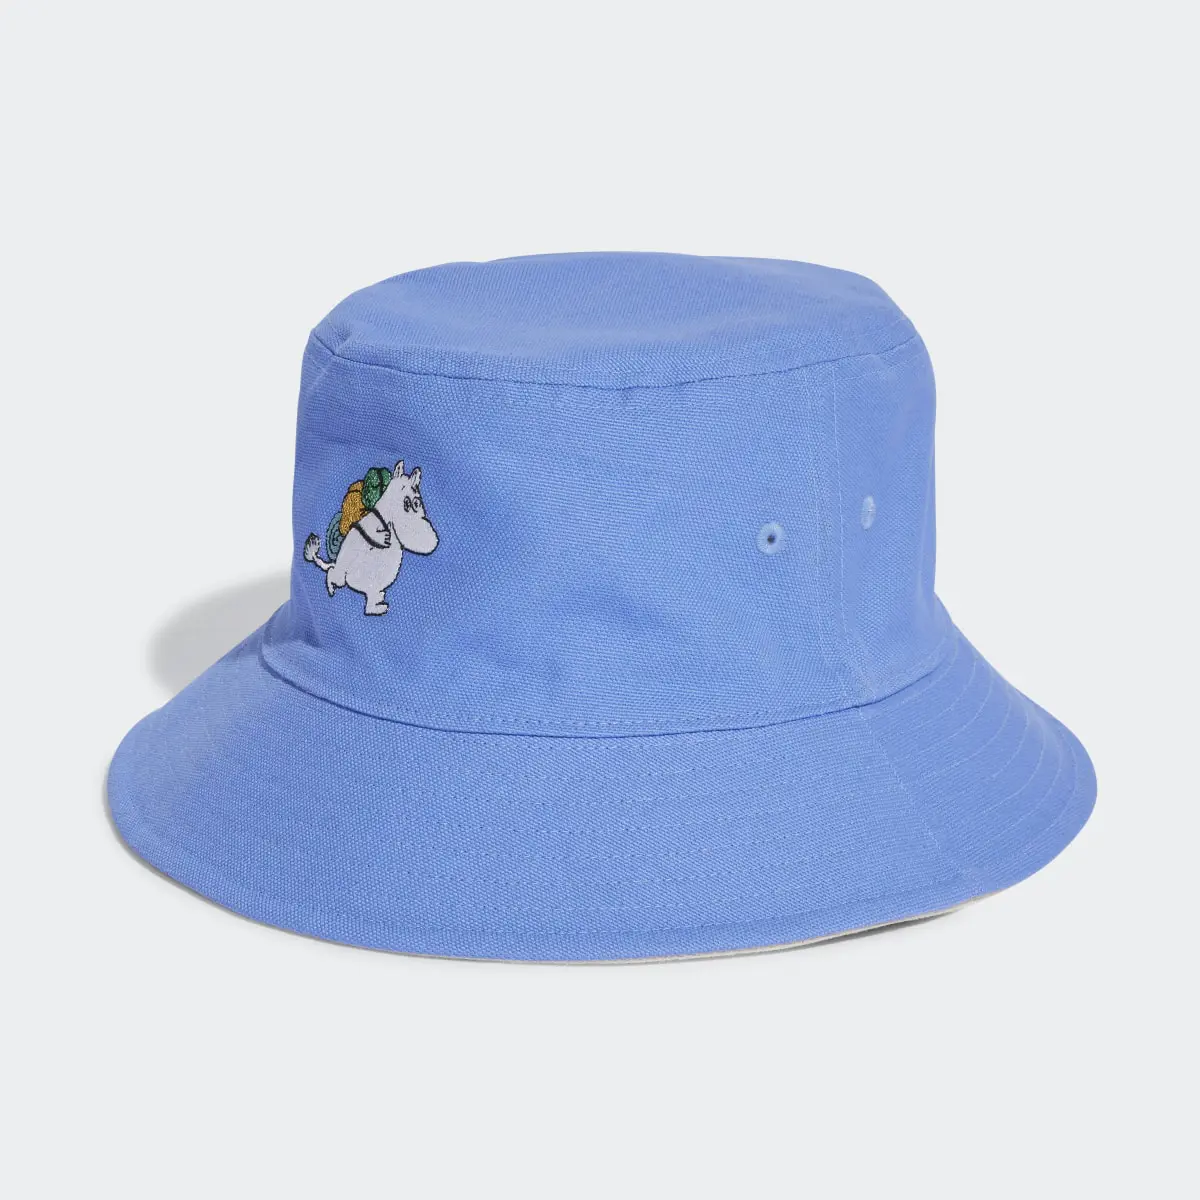 Adidas Originals x Moomin Reversible Bucket Hat. 2